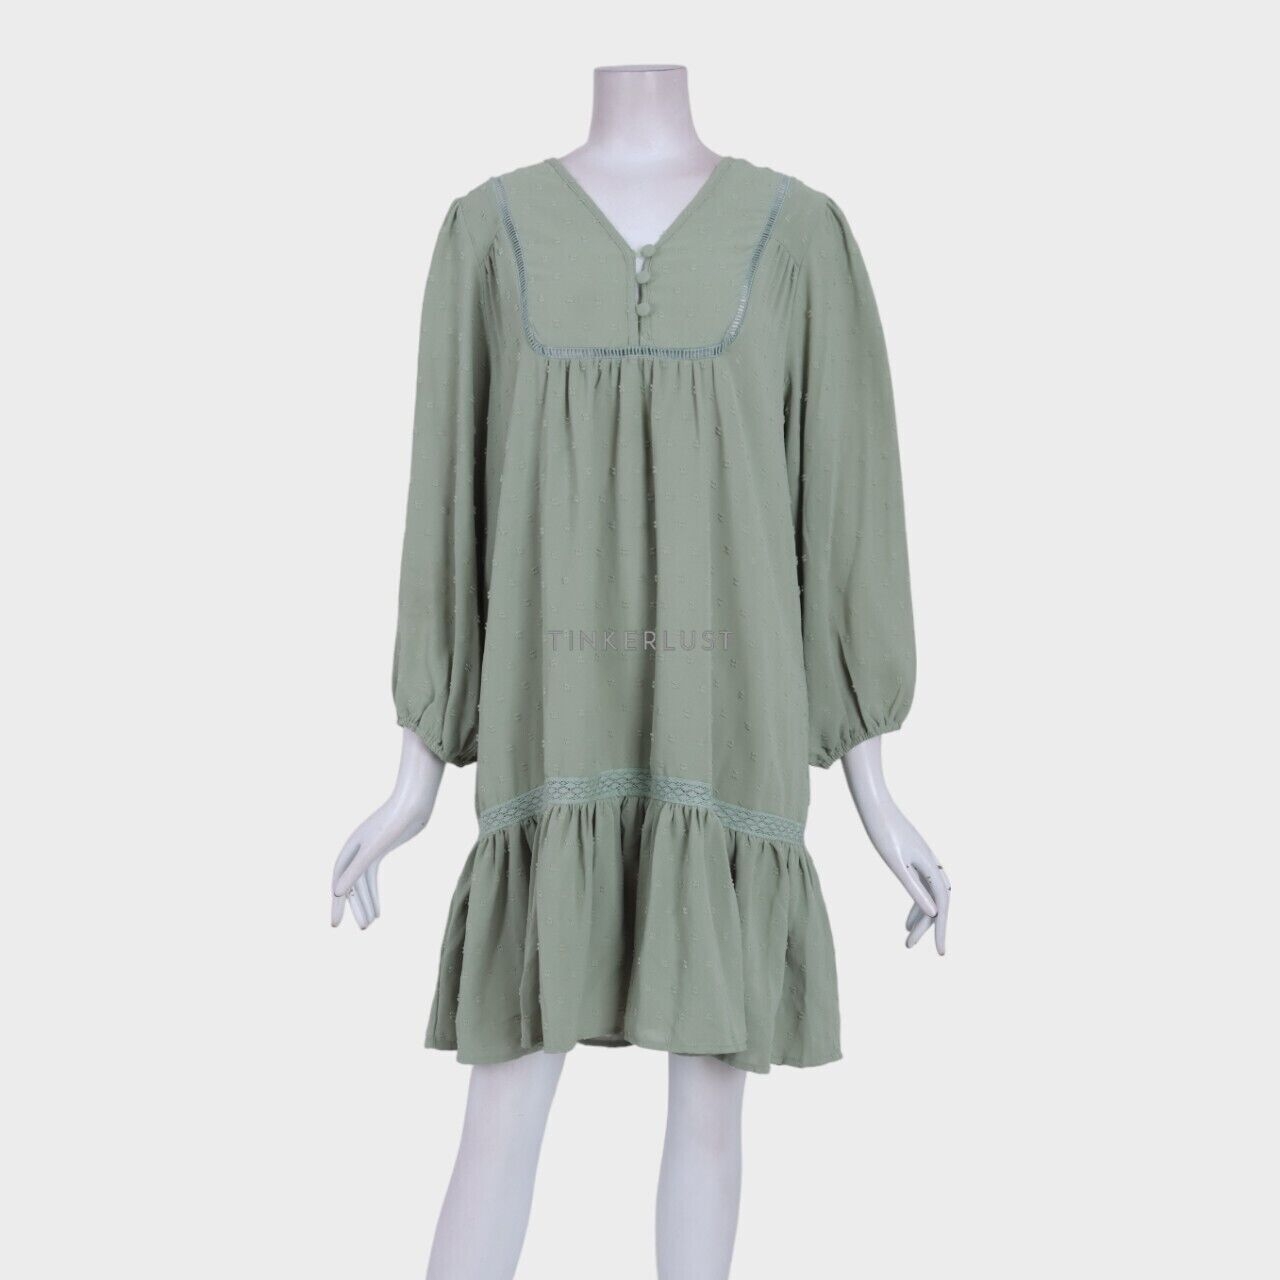 This is April Green Mini Dress